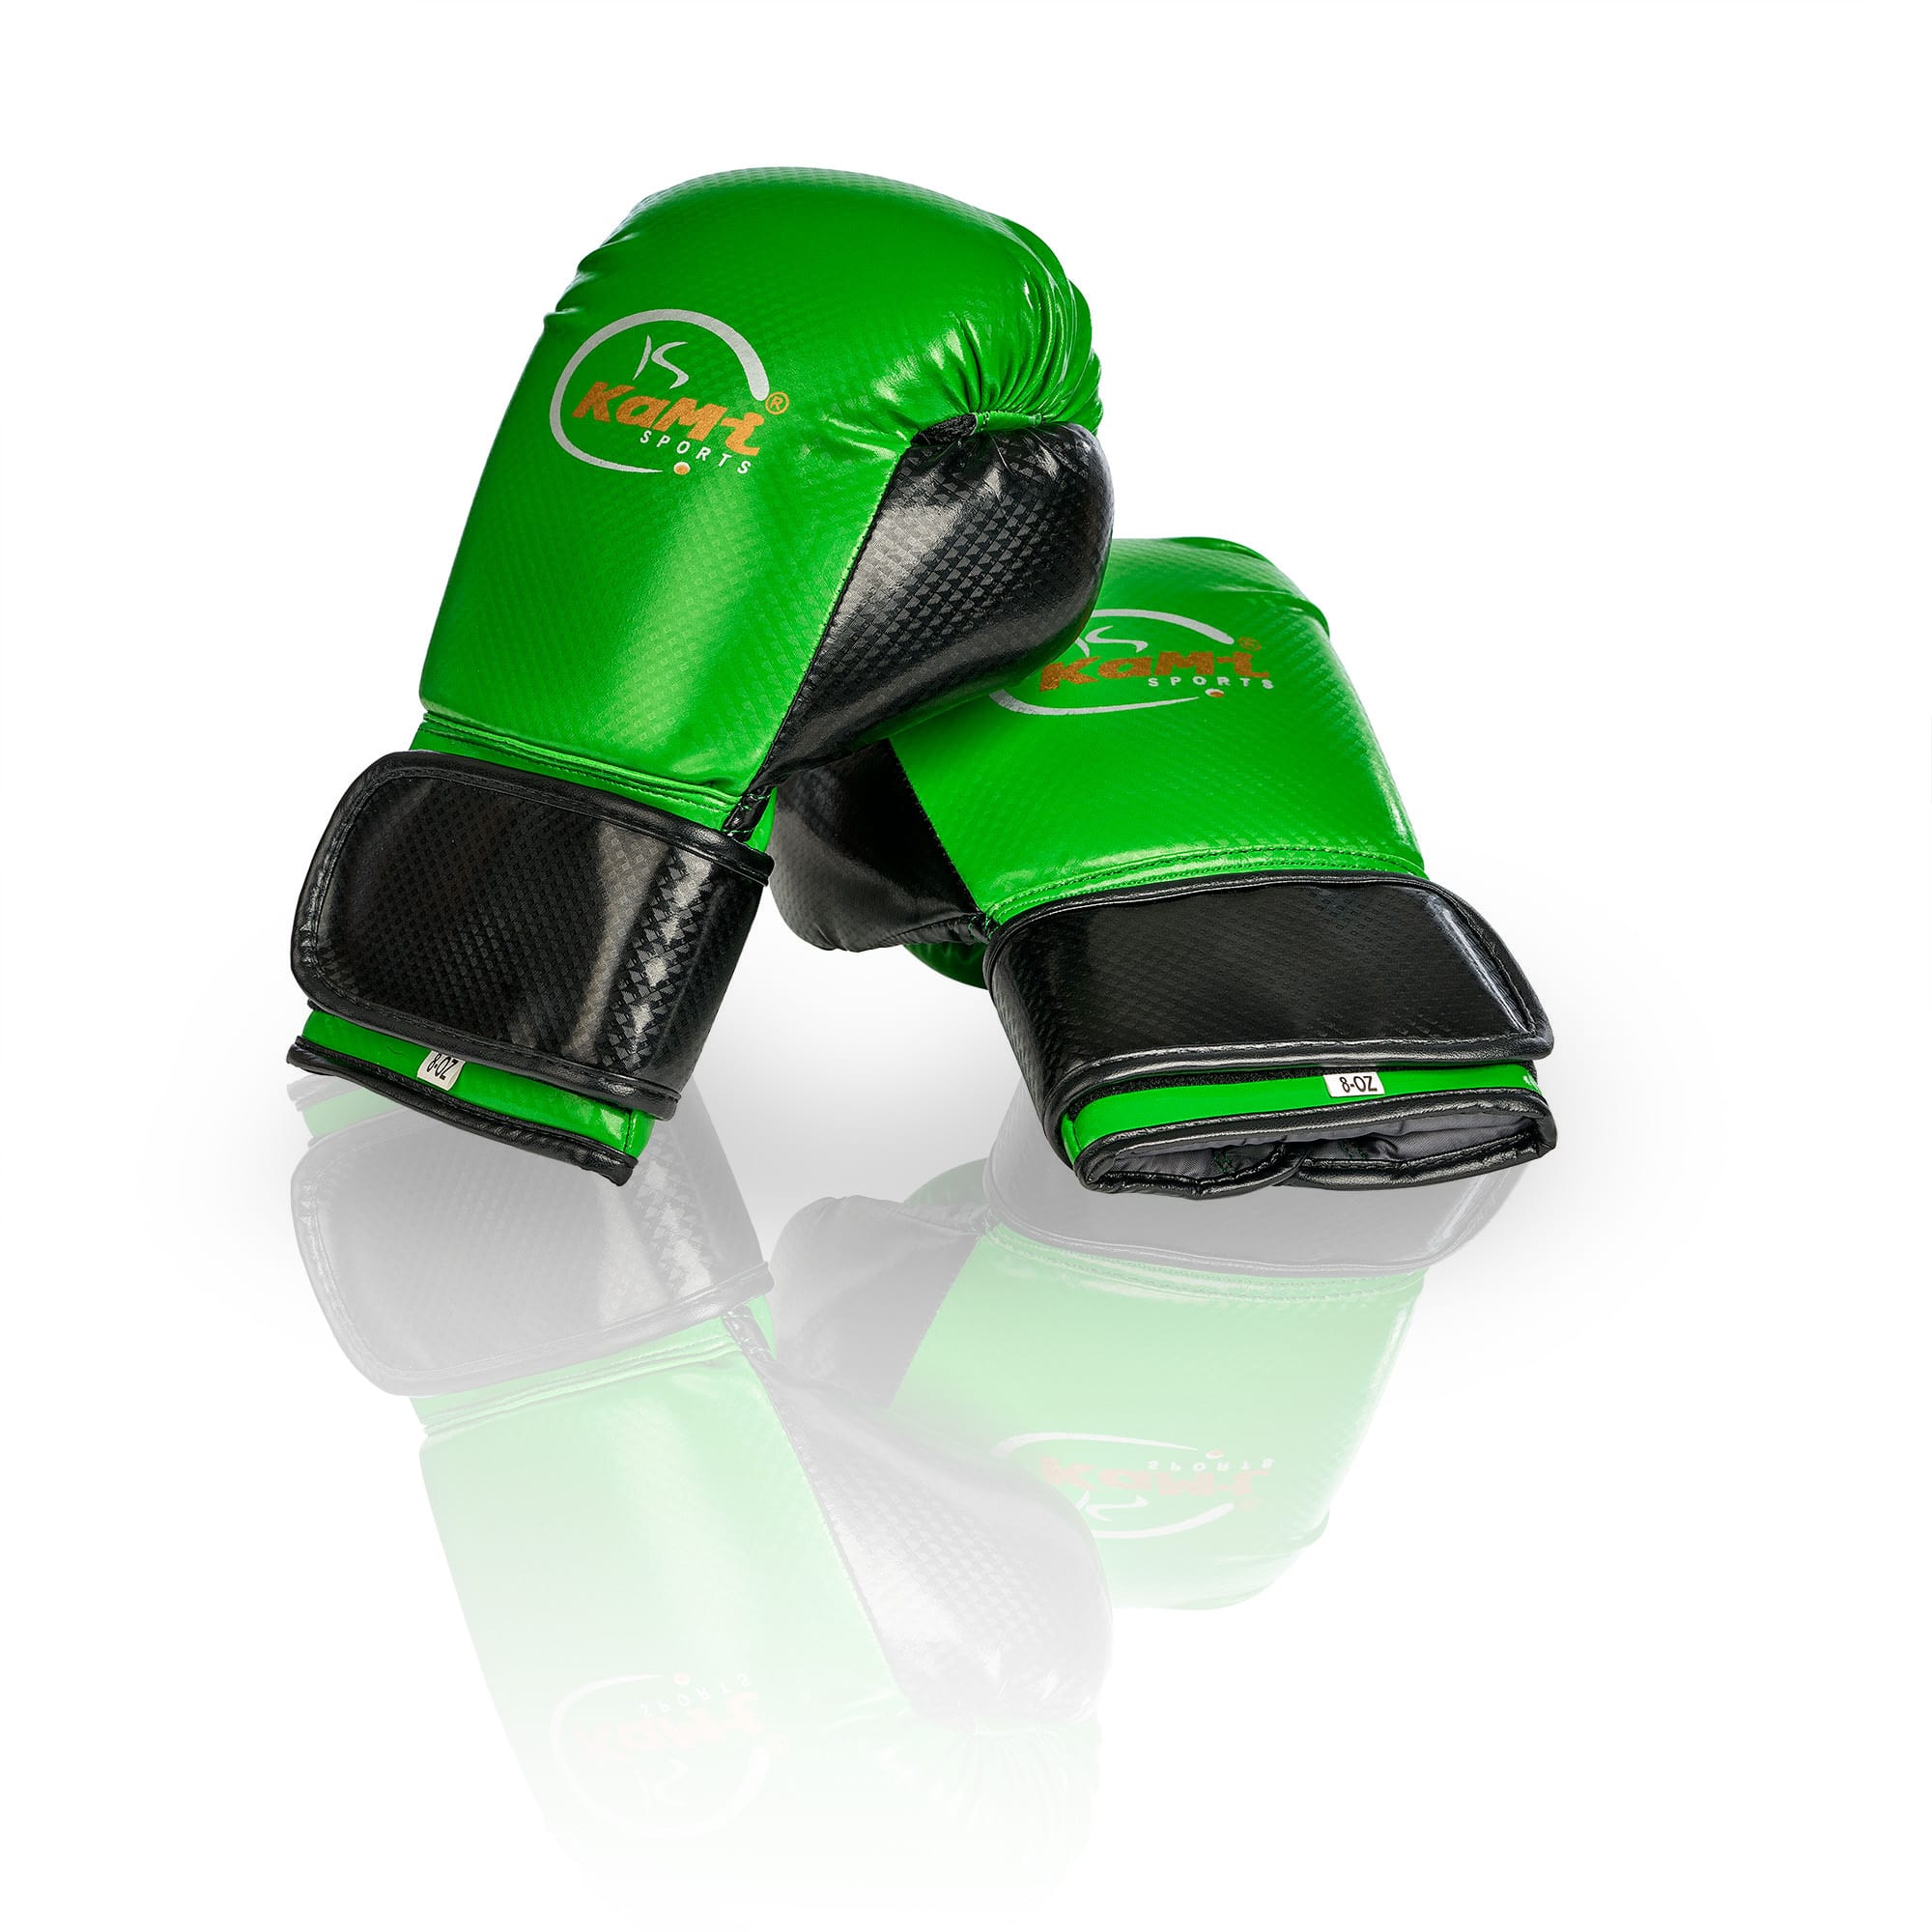 Frontansicht hochwertiger Kinder Boxhandschuhe in grün, entworfen für Sicherheit und Komfort junger Sportler. Diese Handschuhe sind robust, passgenau und bieten dank Premium-Schaumstofftechnologie exzellenten Knöchelschutz. Sie verfügen über eine lange Stulpe zur Handgelenkunterstützung, sind atmungsaktiv durch eine Mesh-Handfläche für Komfort und aus langlebigem PU-Leder gefertigt. Ideal für Boxen, MMA, Kickboxen und Muay Thai, schützen sie junge Athleten bei intensivem Training und Wettkämpfen.